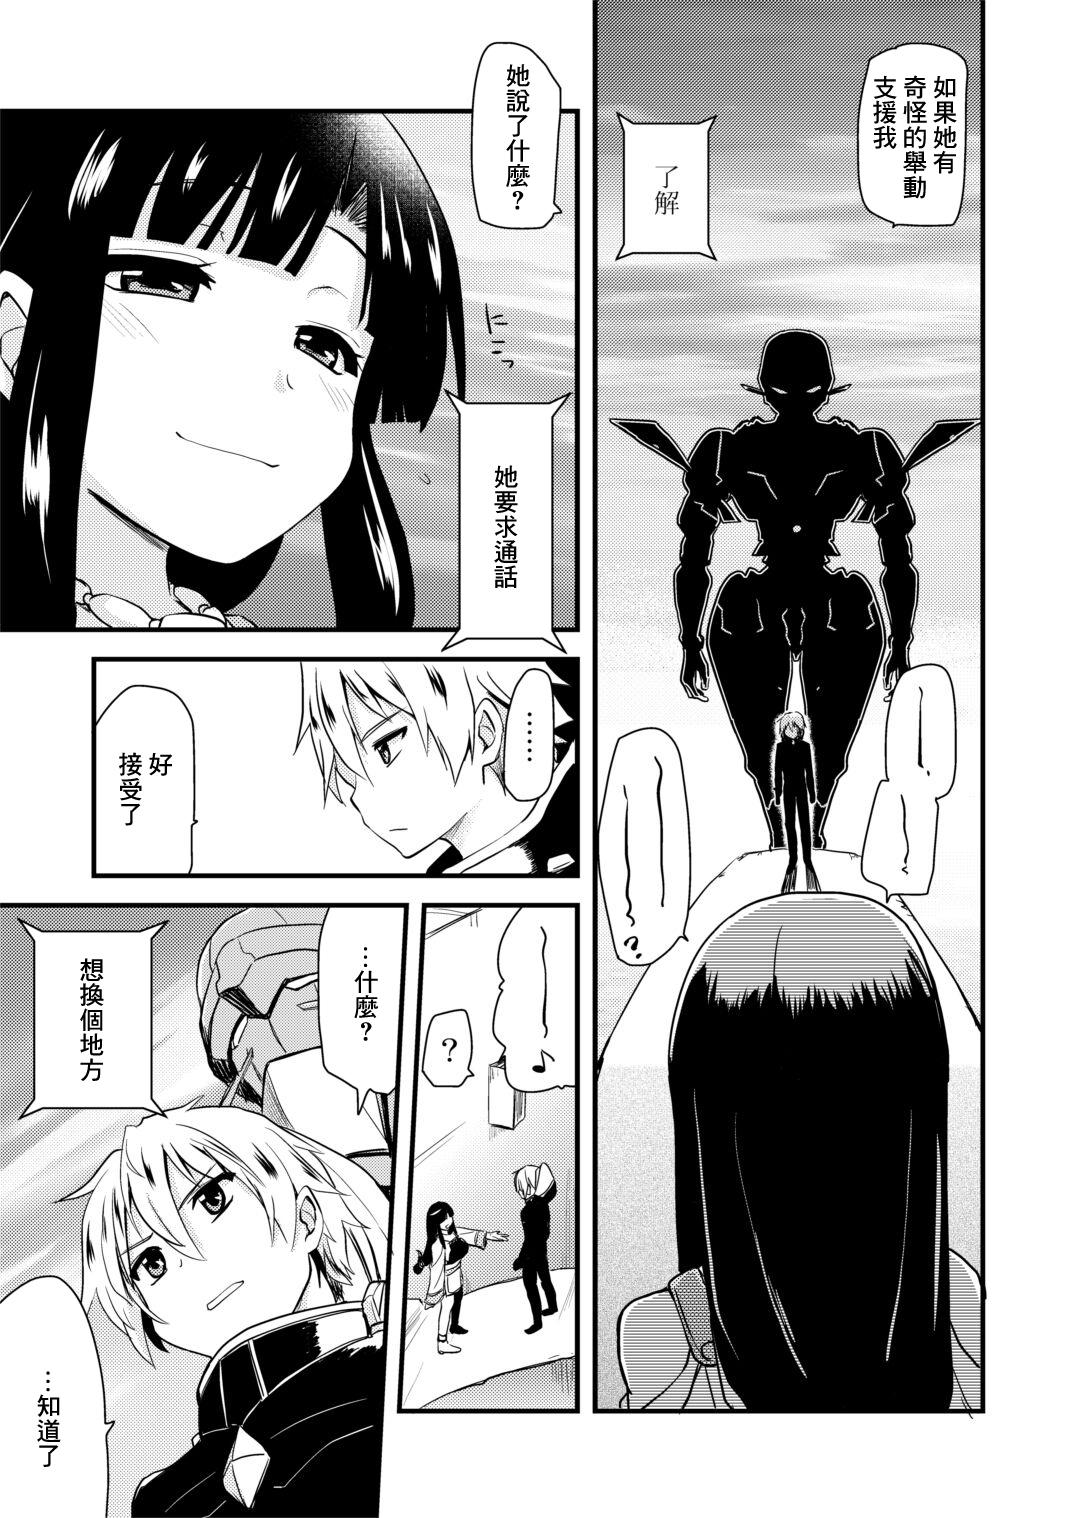 Sissy Muchimuchi Manga 14P Tiny - Page 5